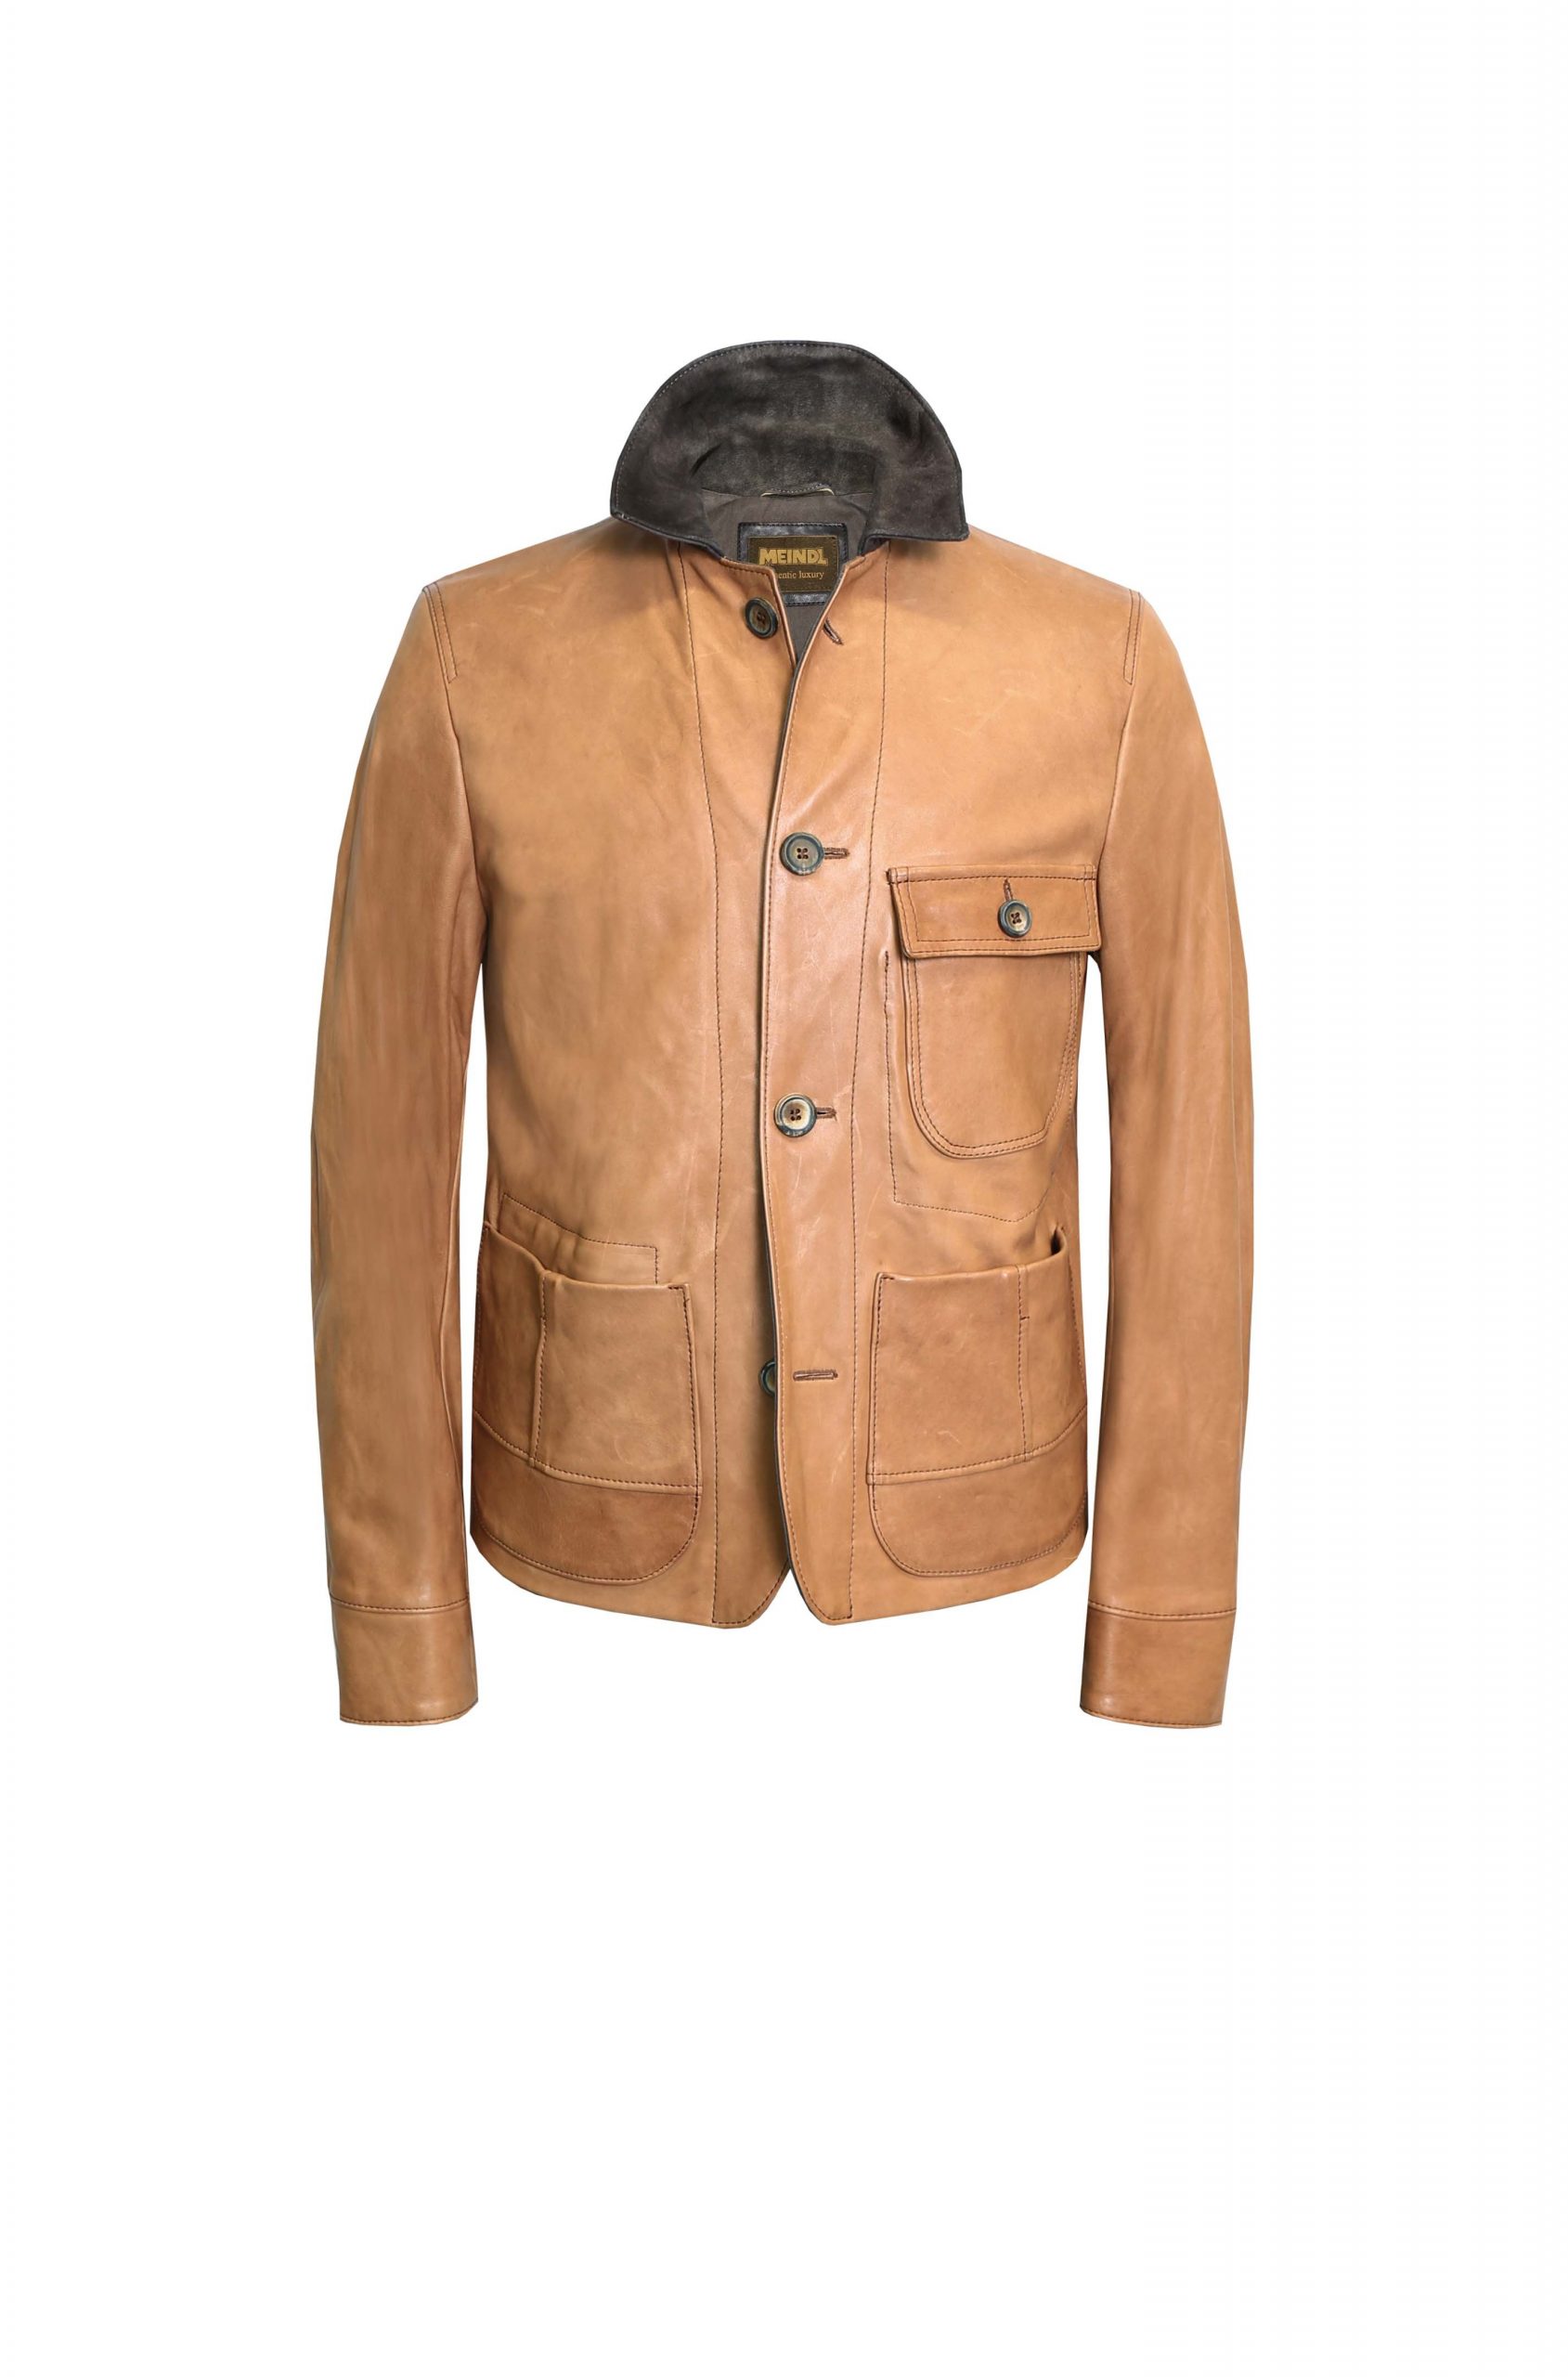 Leather Jacket Men “Dalton”, saddle